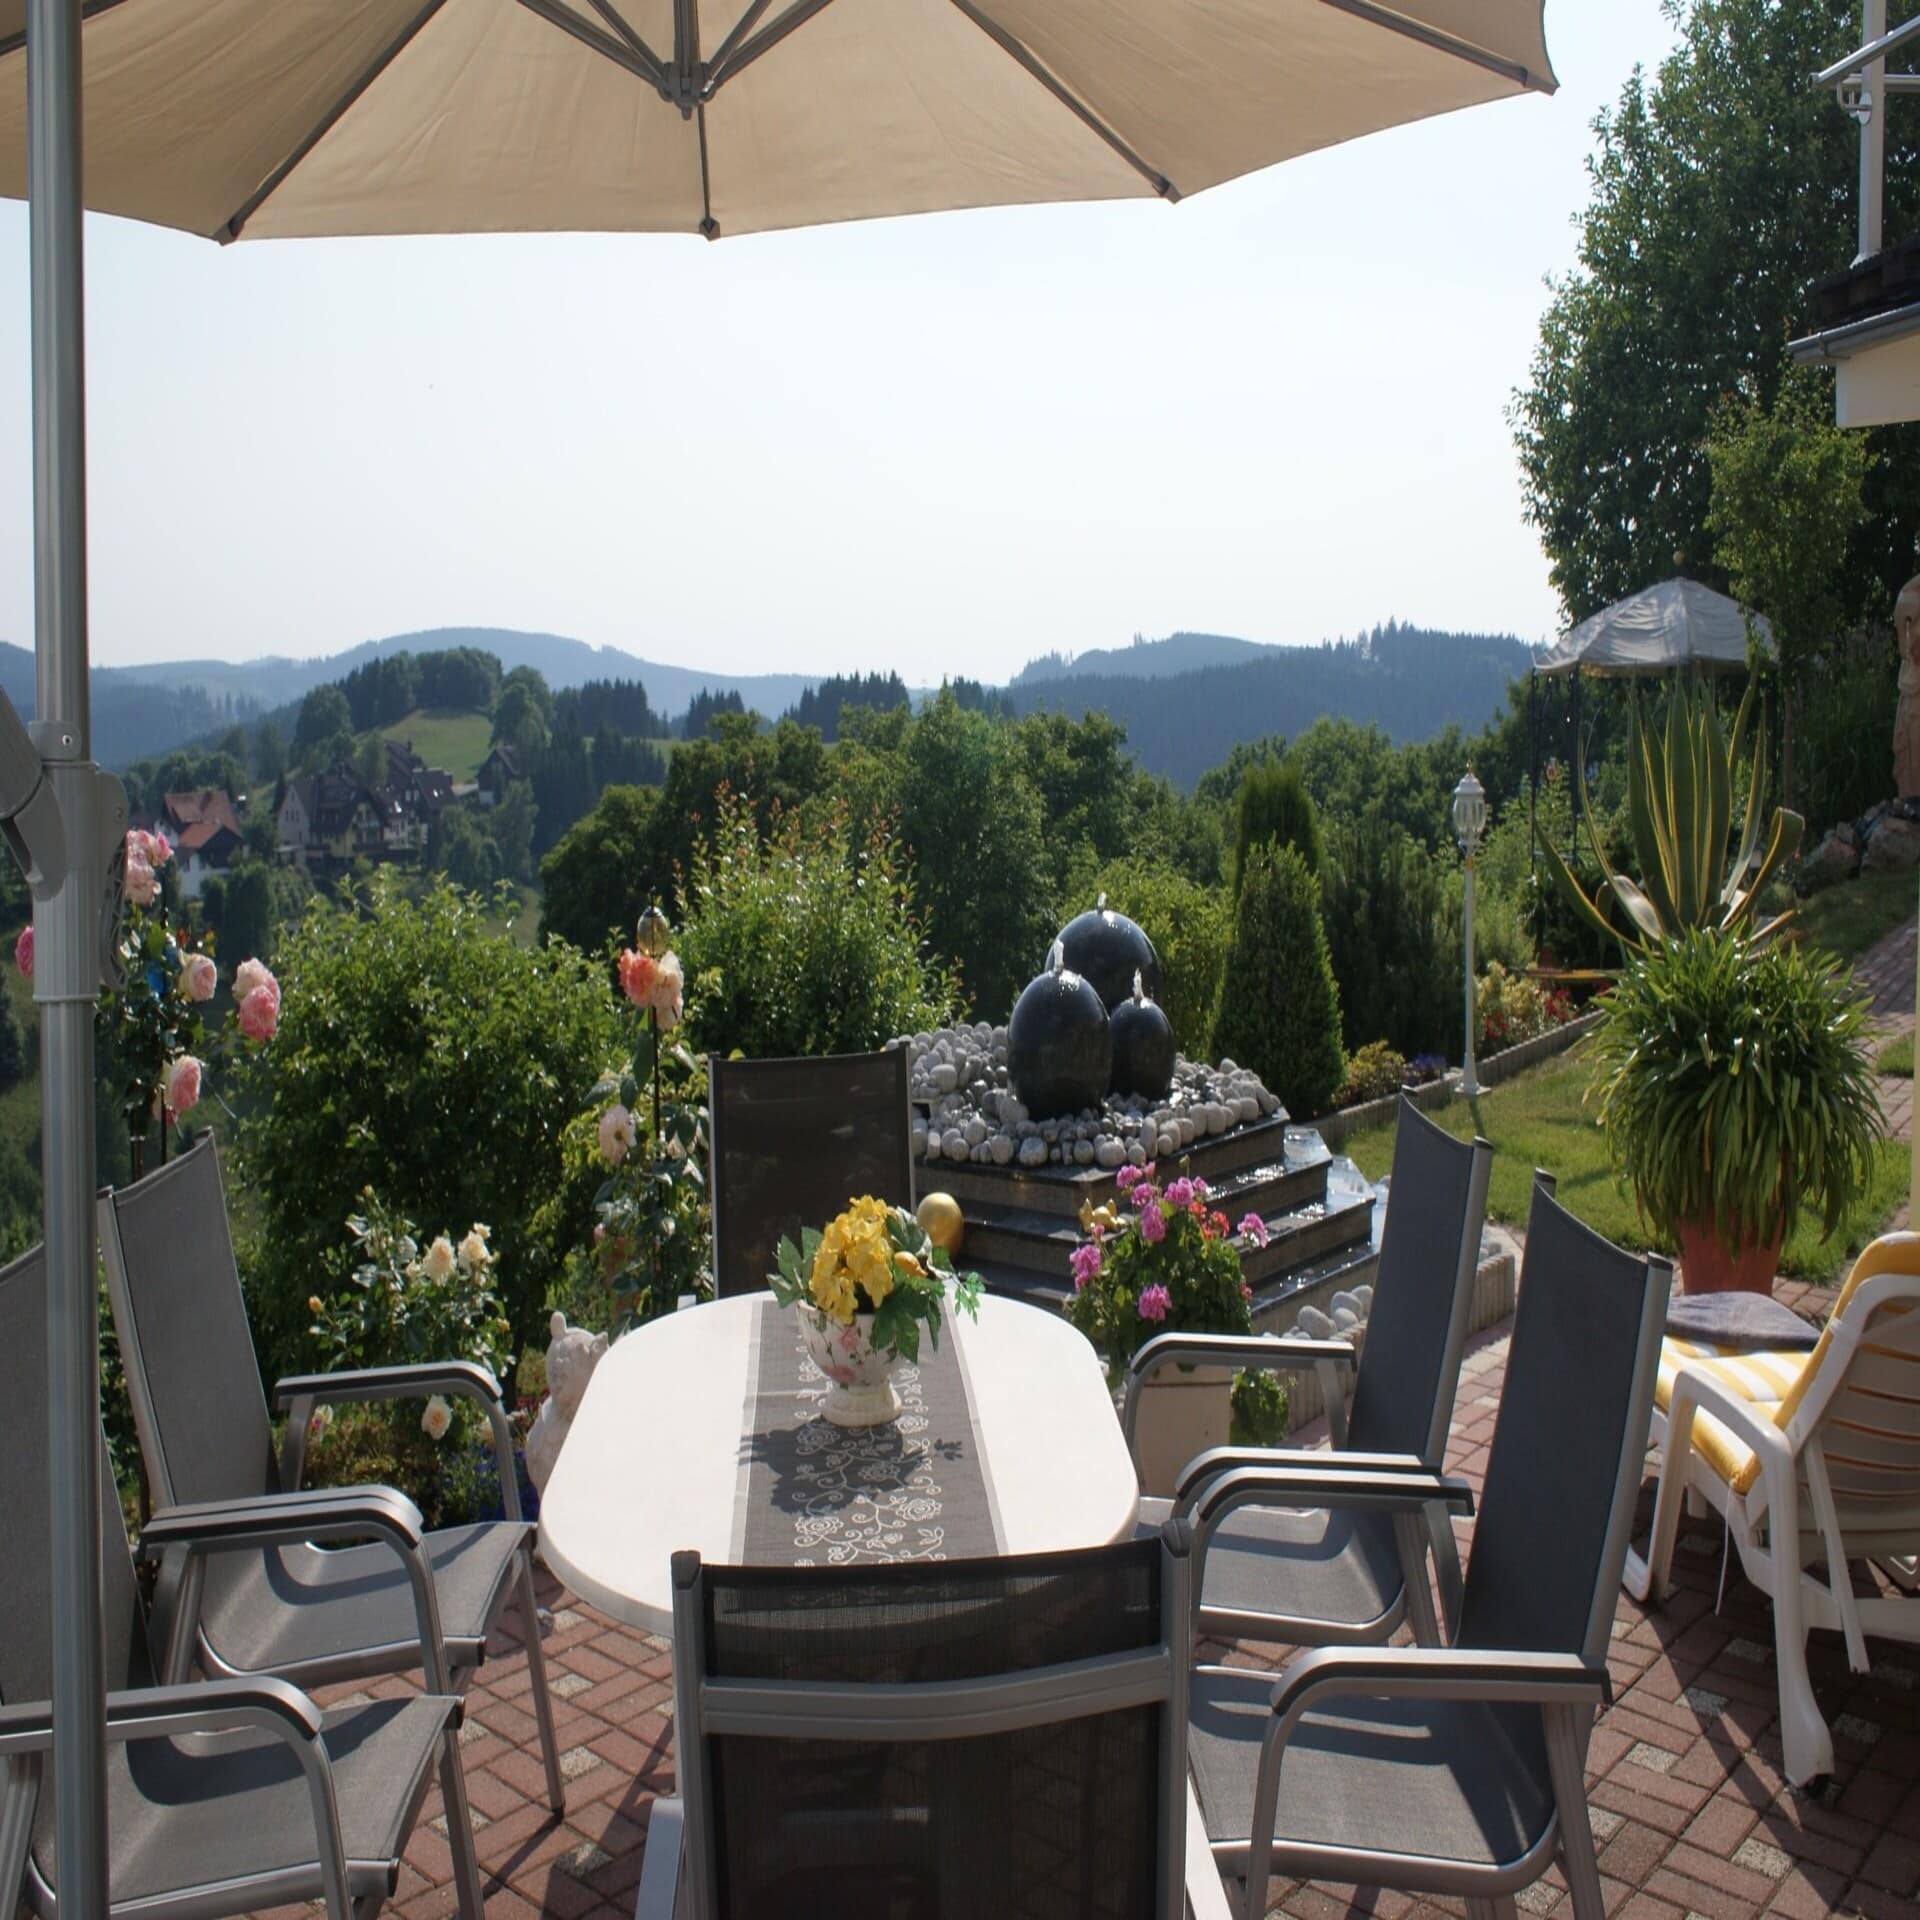 Terrasse mit Tisch, Sonnenschirm und Stühlen sowie Panoramablick auf die ländliche Umgebung.